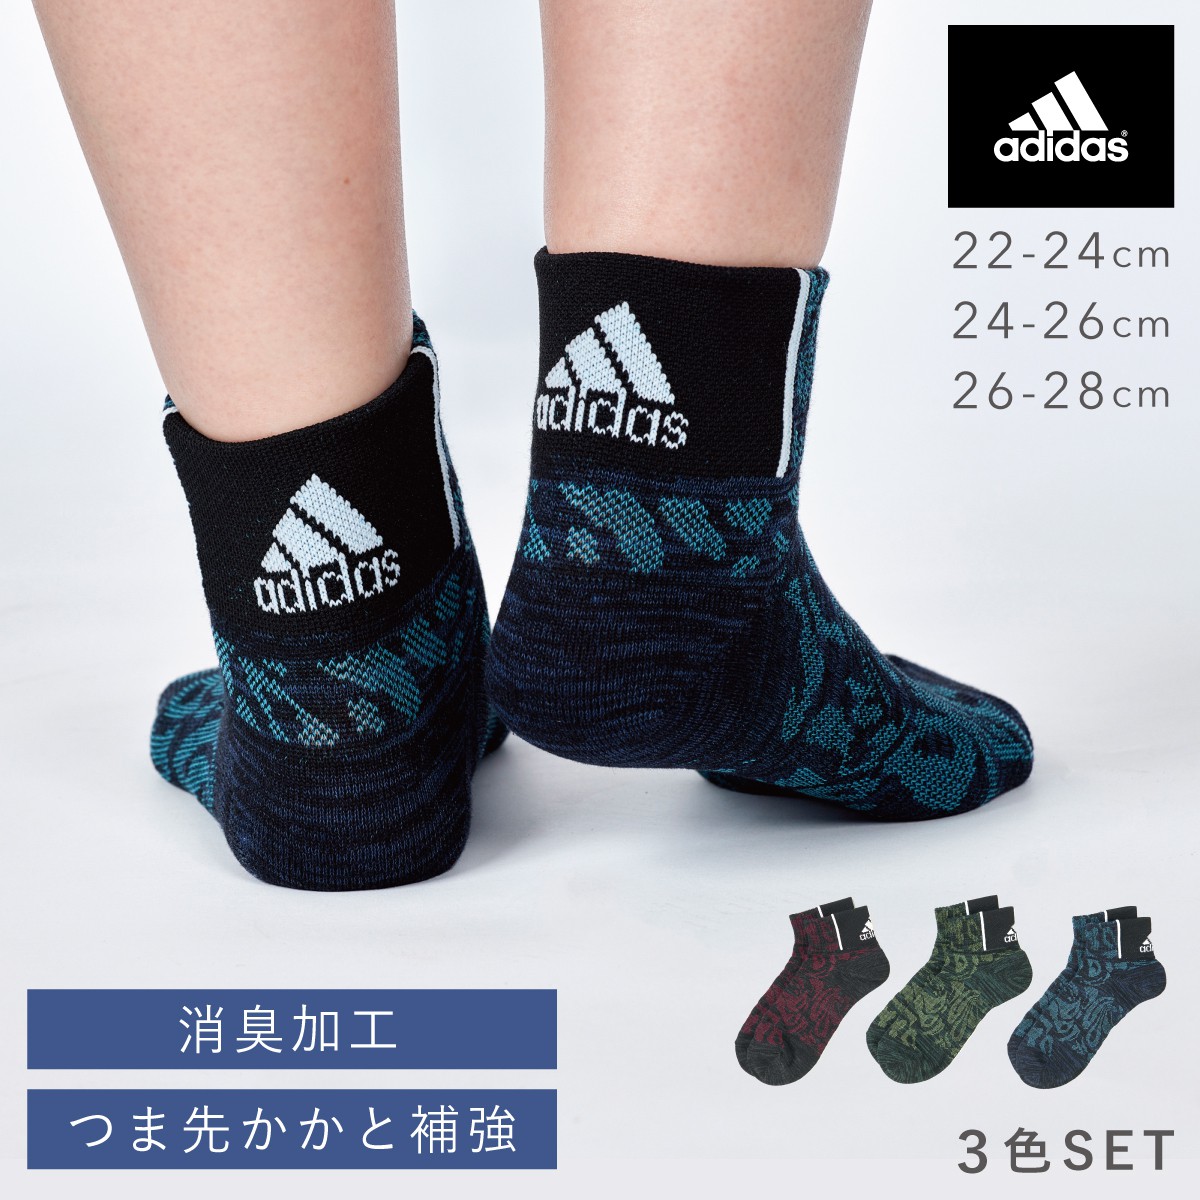 【楽天市場】靴下 メンズ レディース 3色組 22-24cm 24-26cm 26